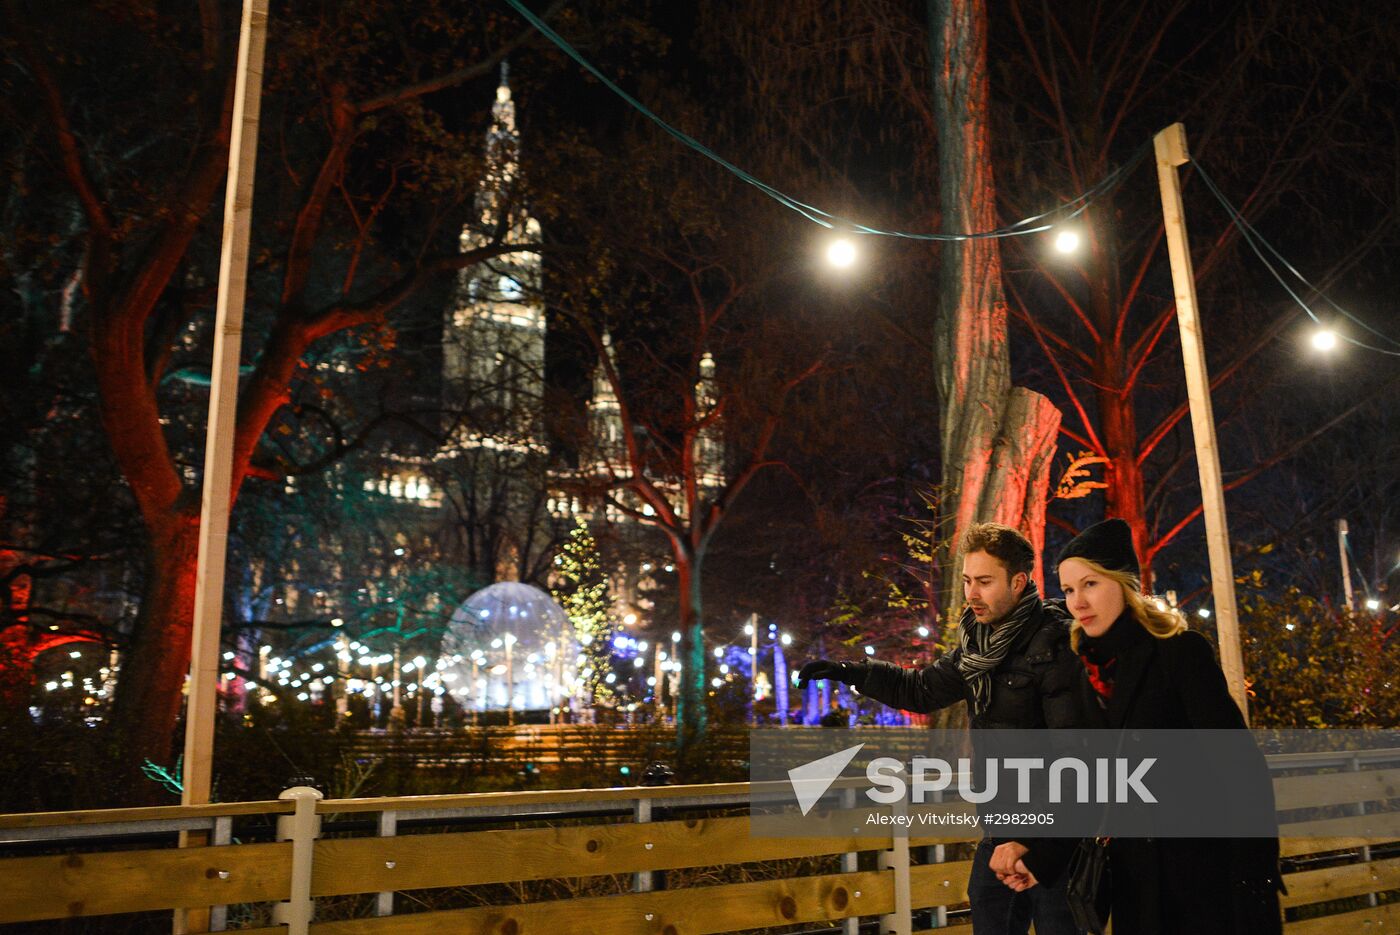 Christmas fair in Vienna